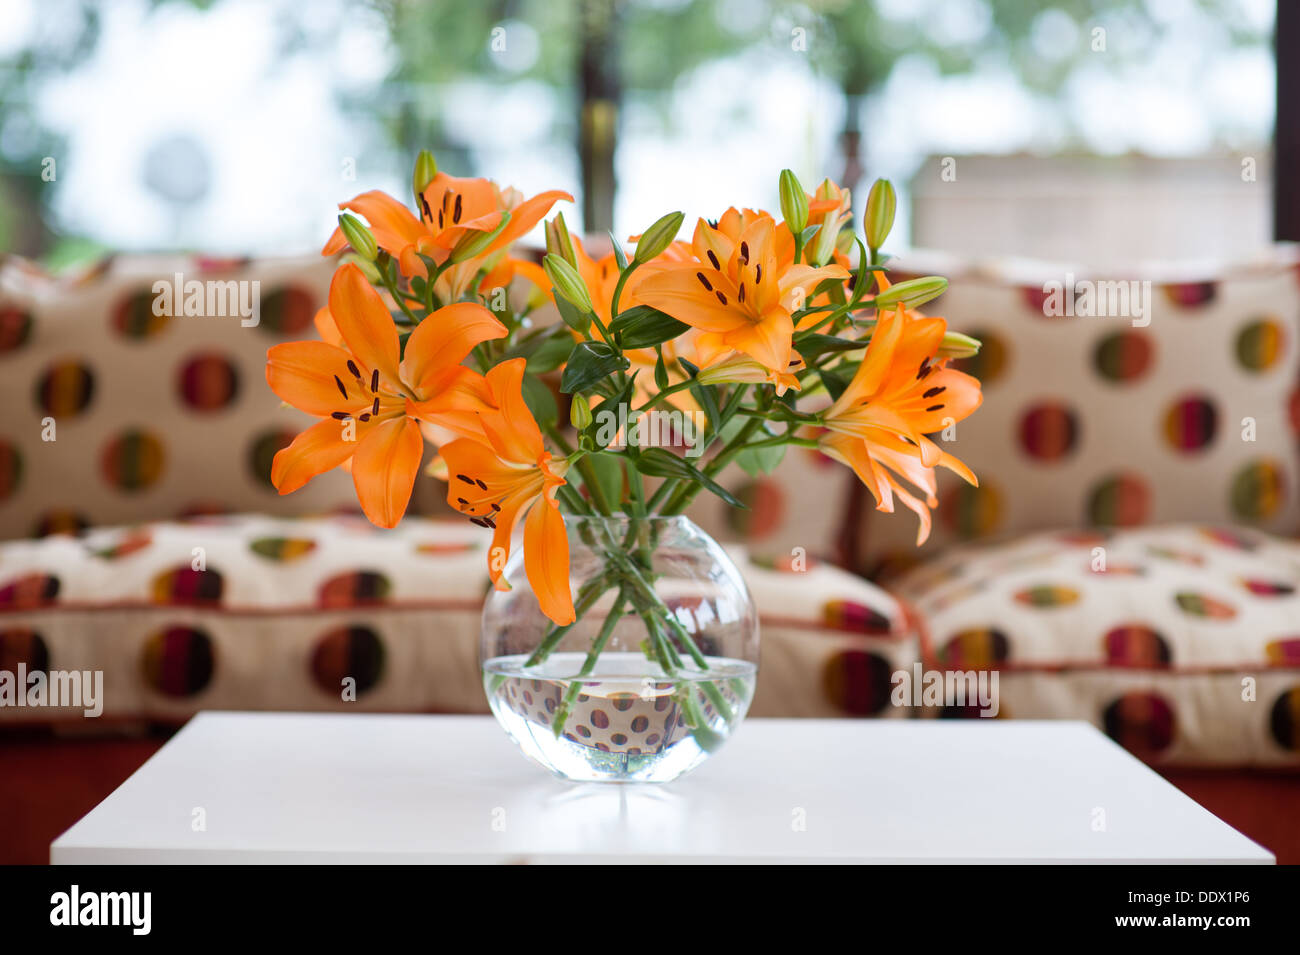 Lys orange dans un vase Banque D'Images